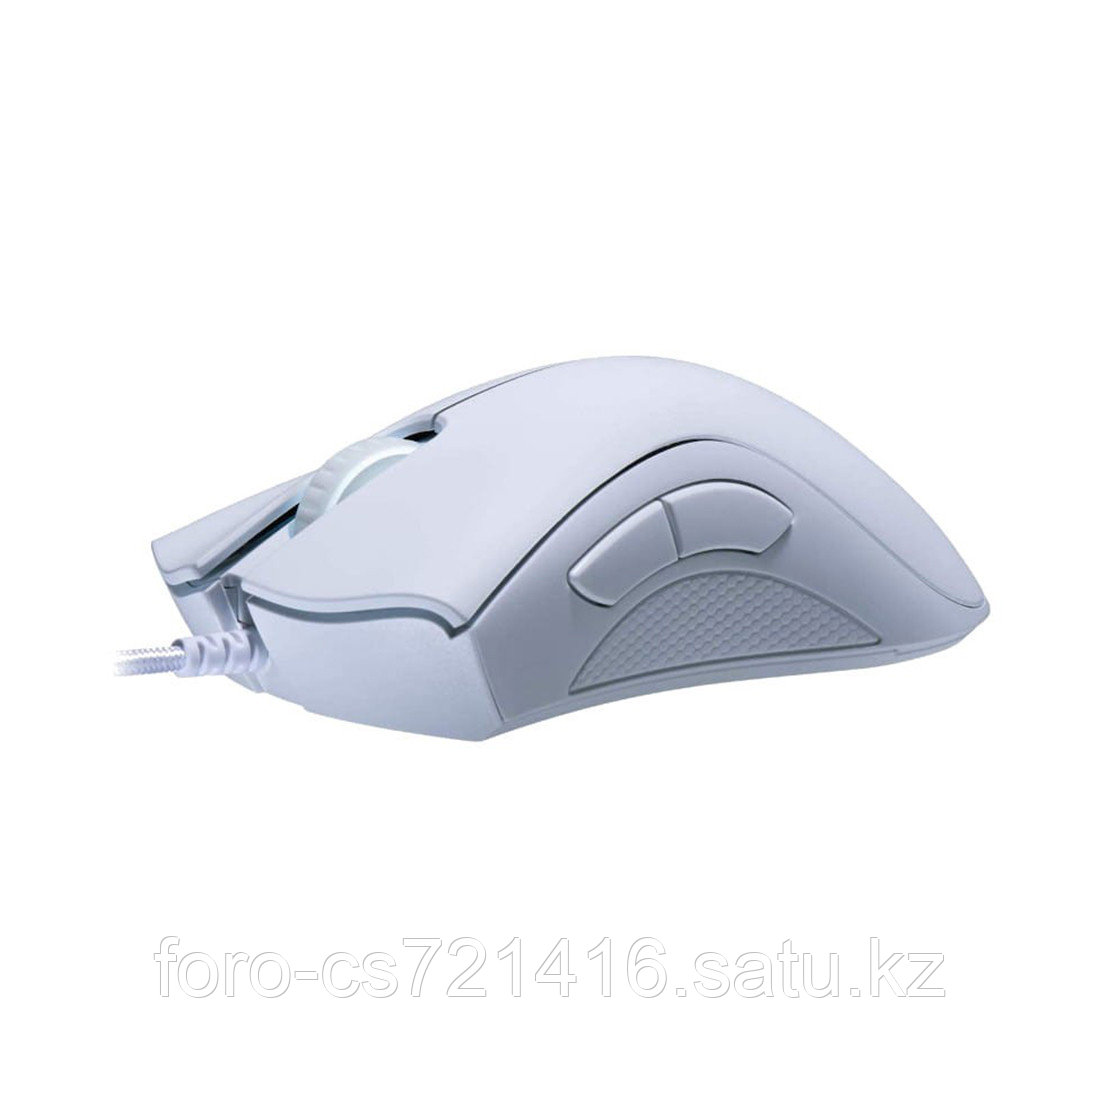 Компьютерная мышь Razer DeathAdder Essential White, фото 1